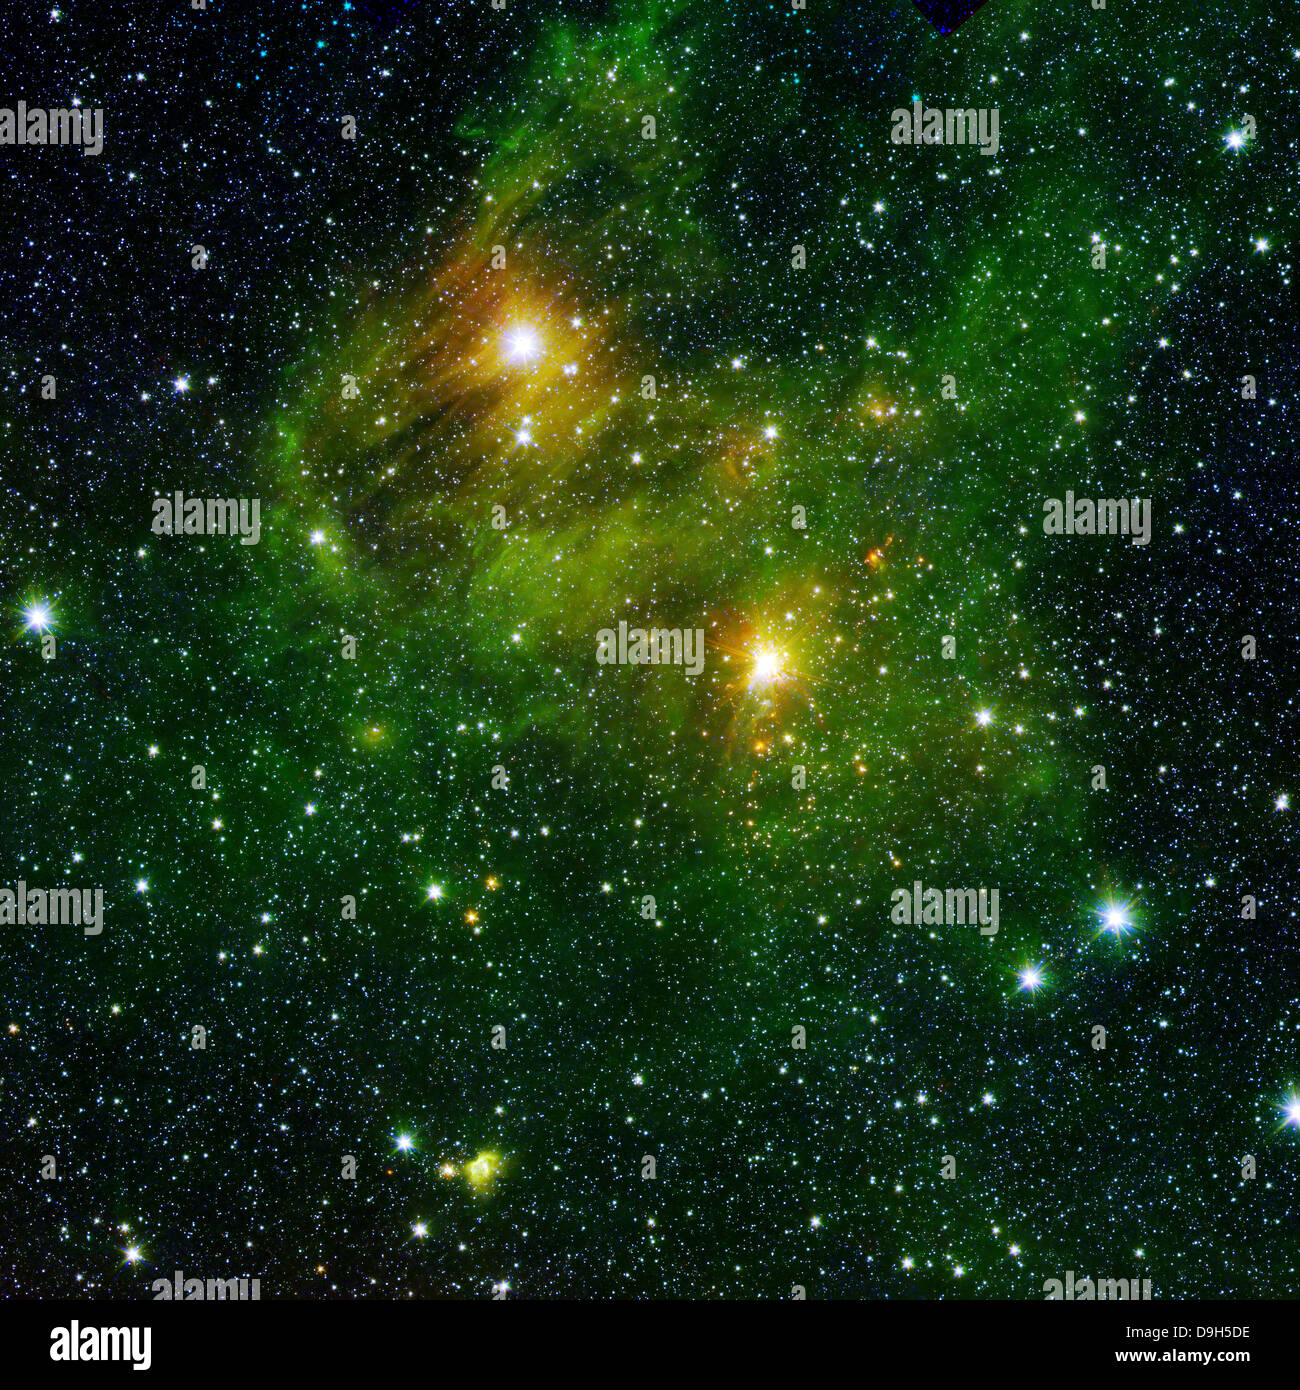 Due estremamente luminose stelle illuminano una nebbia di colore verdastro nello spazio profondo. Foto Stock